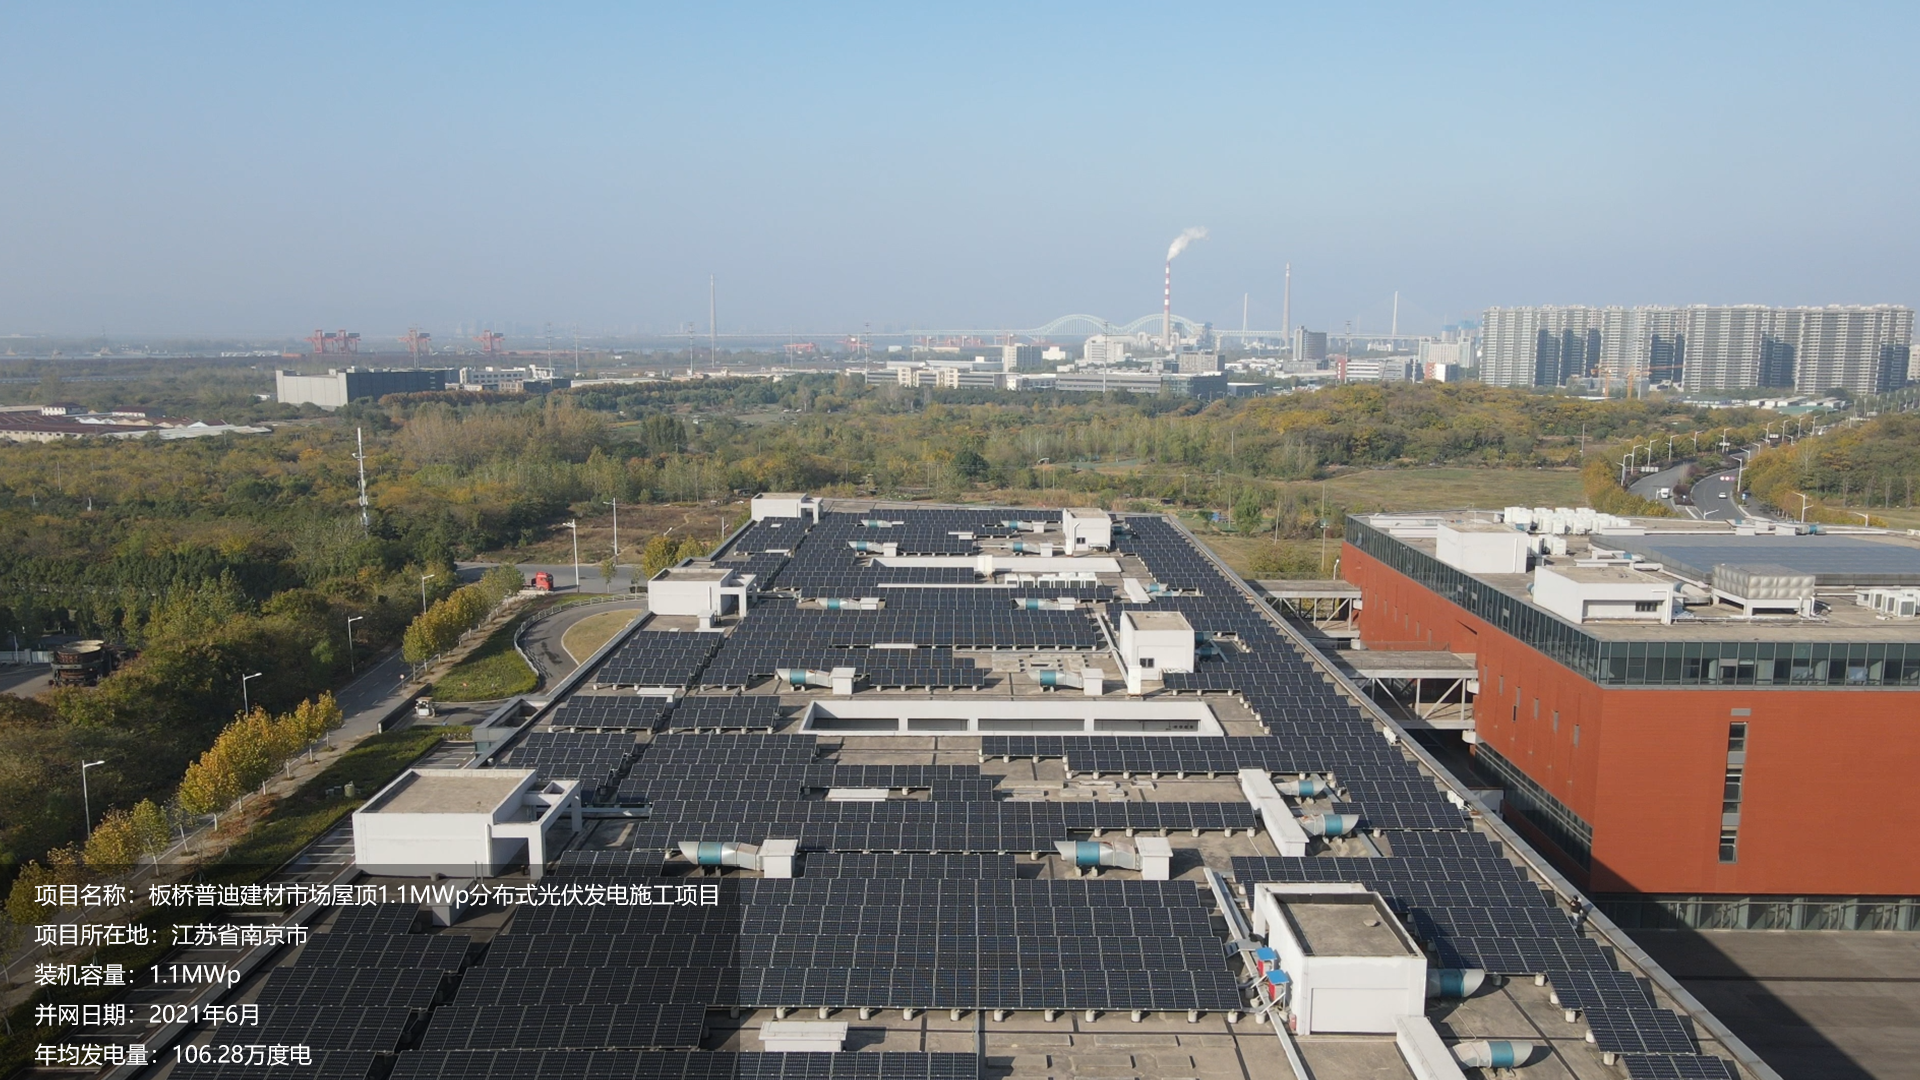 板桥普迪建材项目总装机容量1.1MW，项目位于江苏省南京市，于2021年6月并网发电，年均发电量约107万度。			